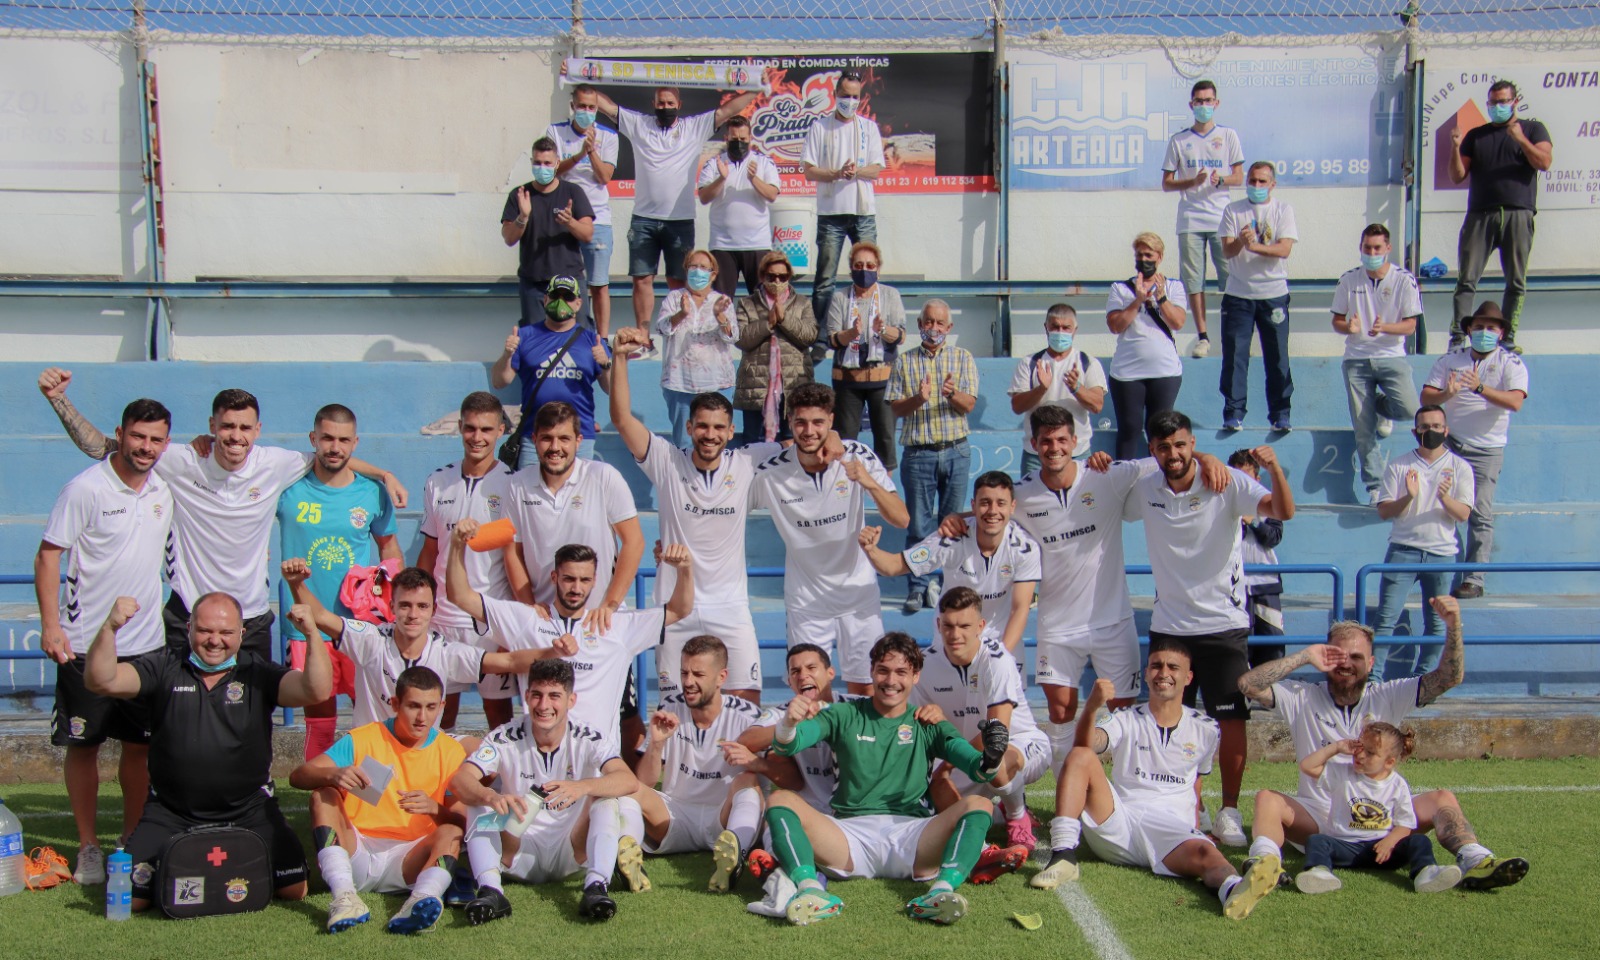 Los jugadores celebran la victoria. Foto de José Ayut.